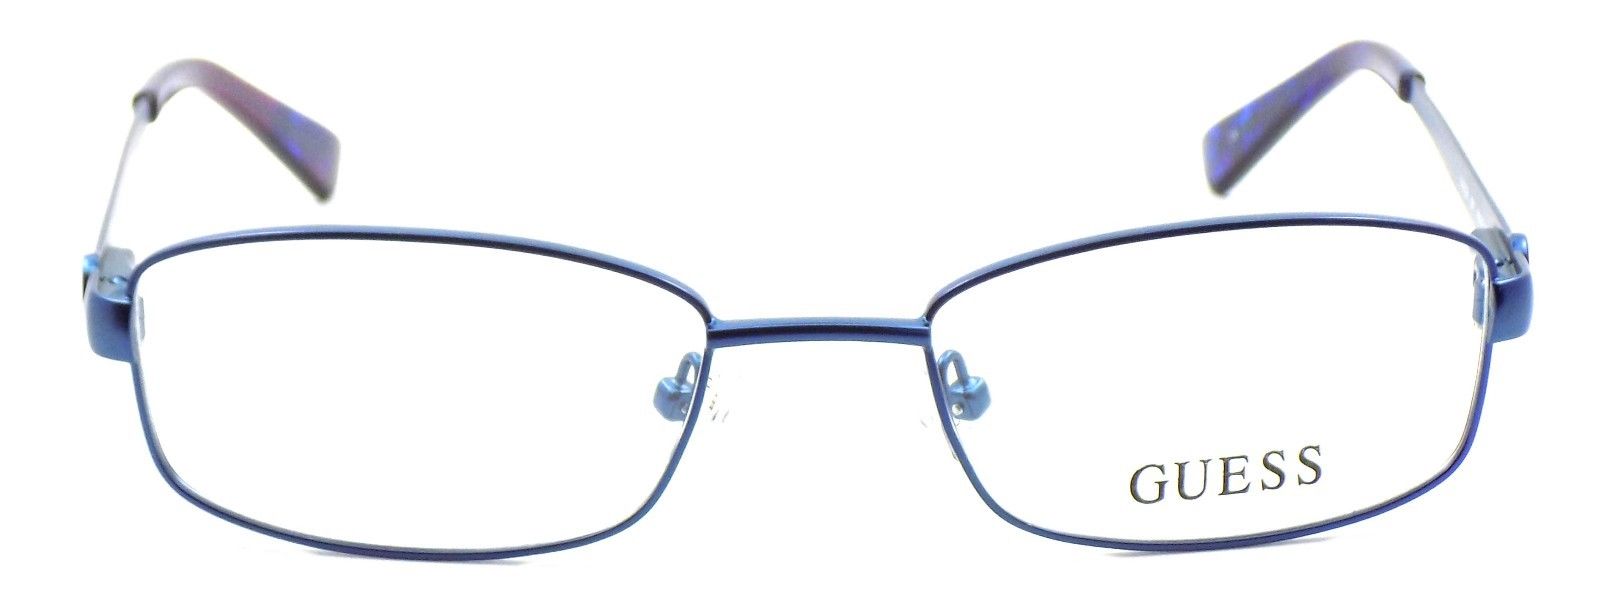 2-GUESS GU2524 091 Women's Eyeglasses Frames 49-18-135 Matte Blue + CASE-664689743803-IKSpecs